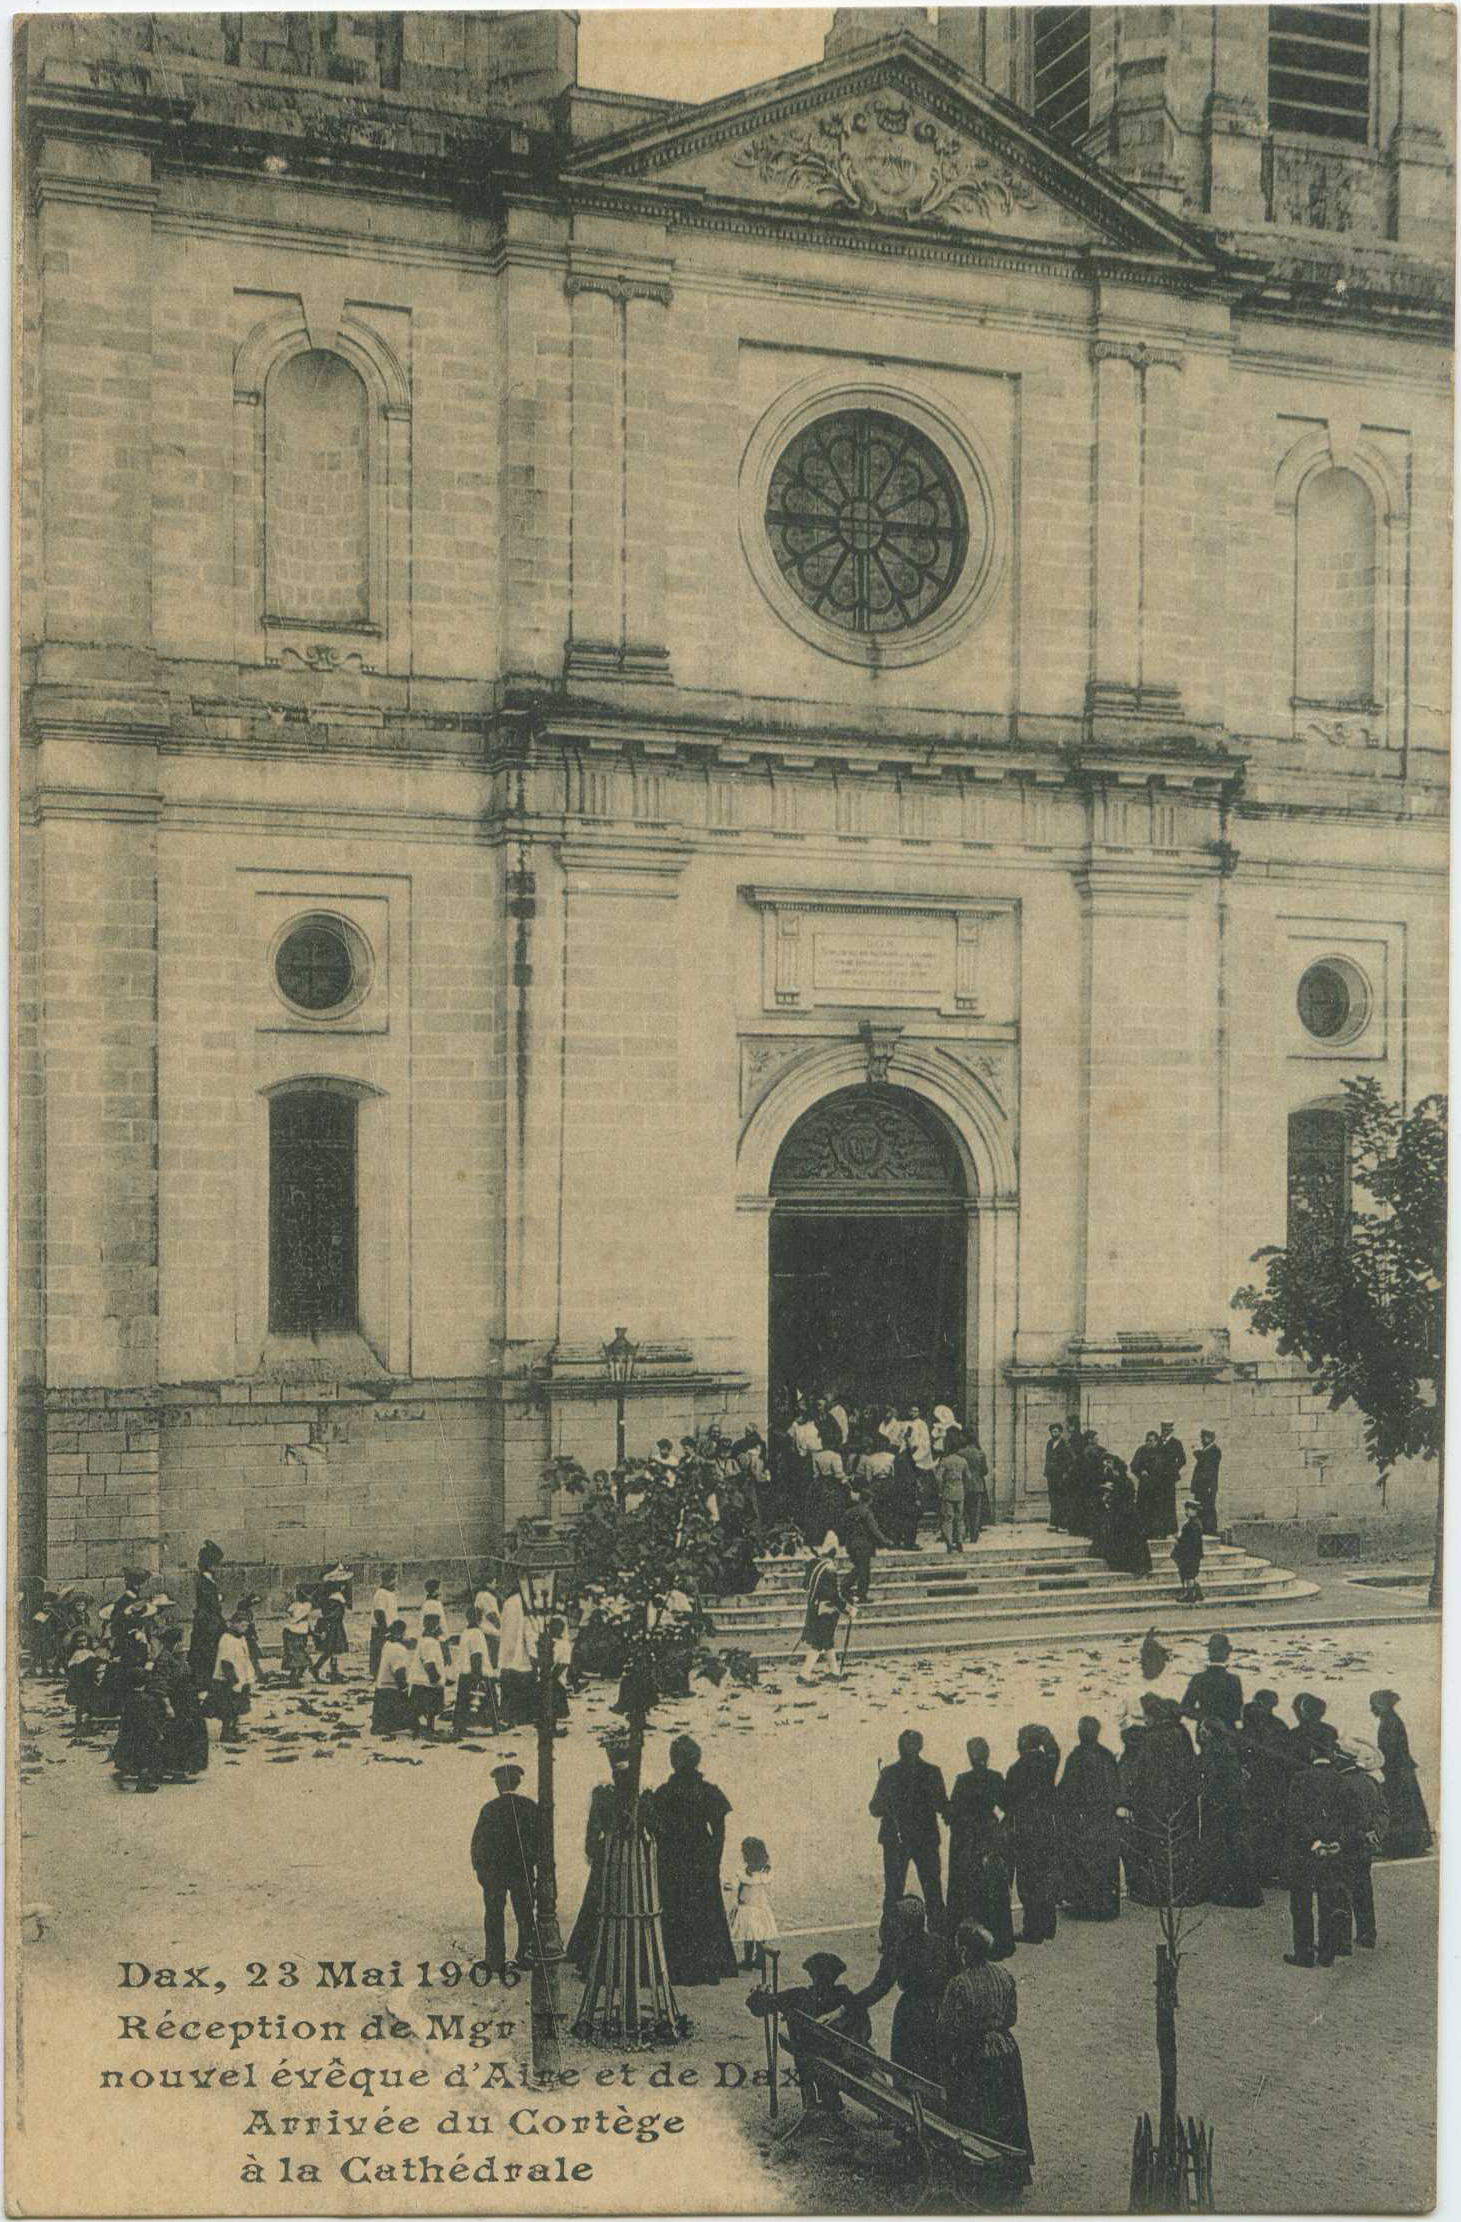 Dax - Dax, 23 Mai 1906 - Réception de Mgr Touzet nouvel évêque d'Aire et de Dax - Arrivée du Cortège à la Cathédrale